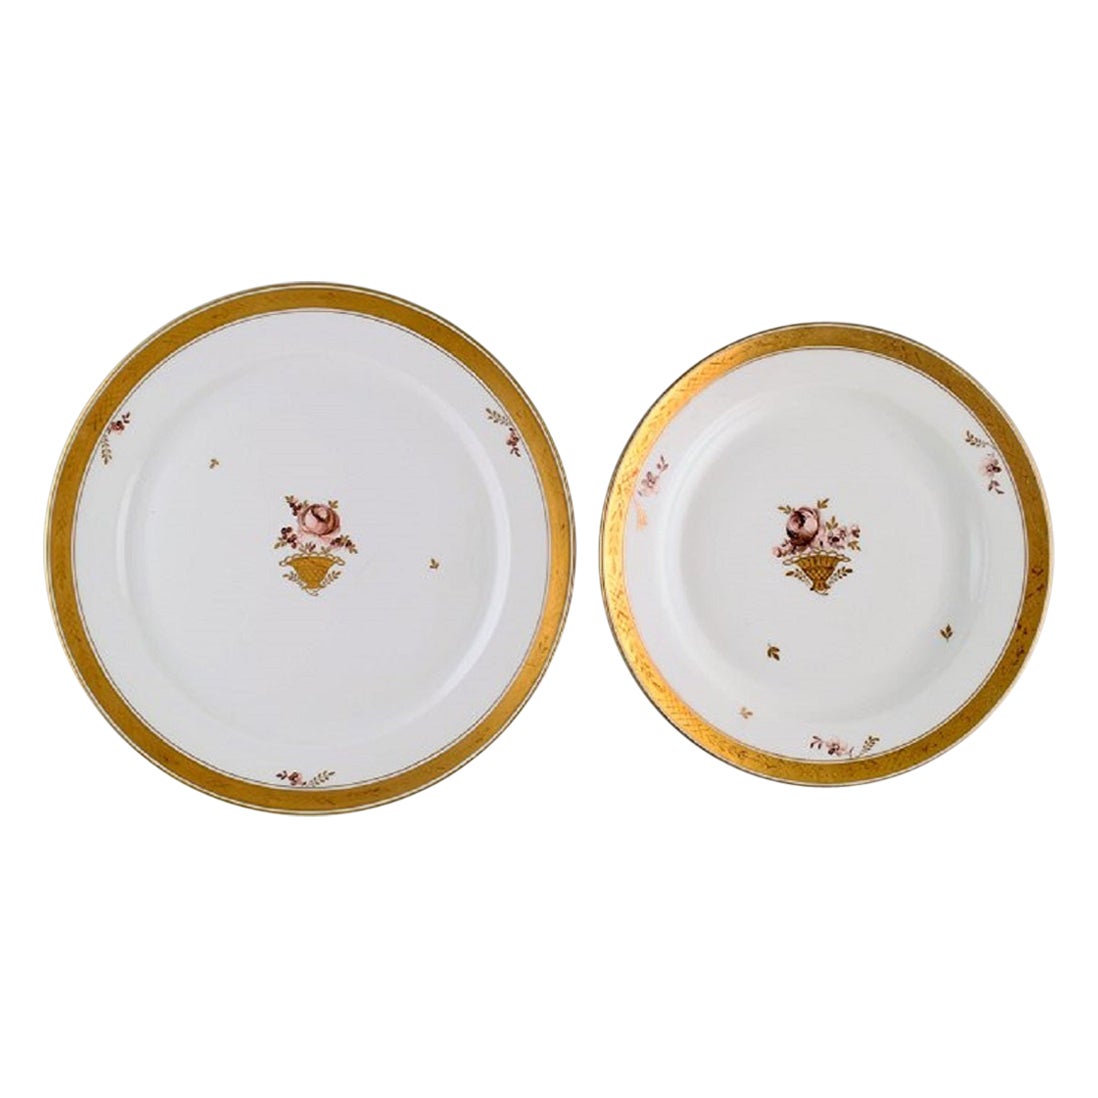 Two Round Royal Copenhagen Golden Basket Serving Dishes in Porcelain